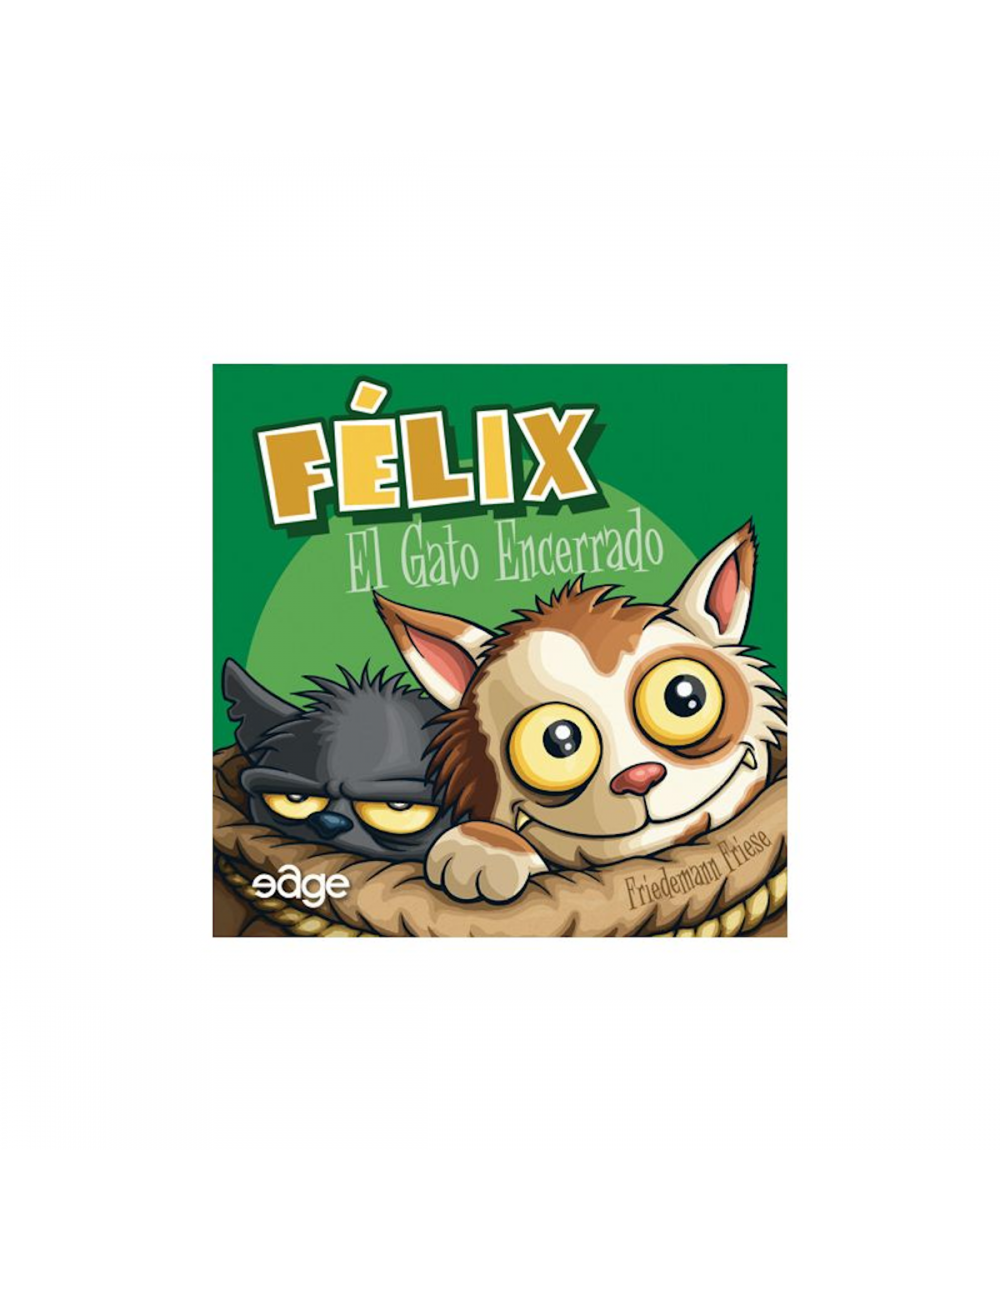 Felix FELIXC802507  Edge Entertainment